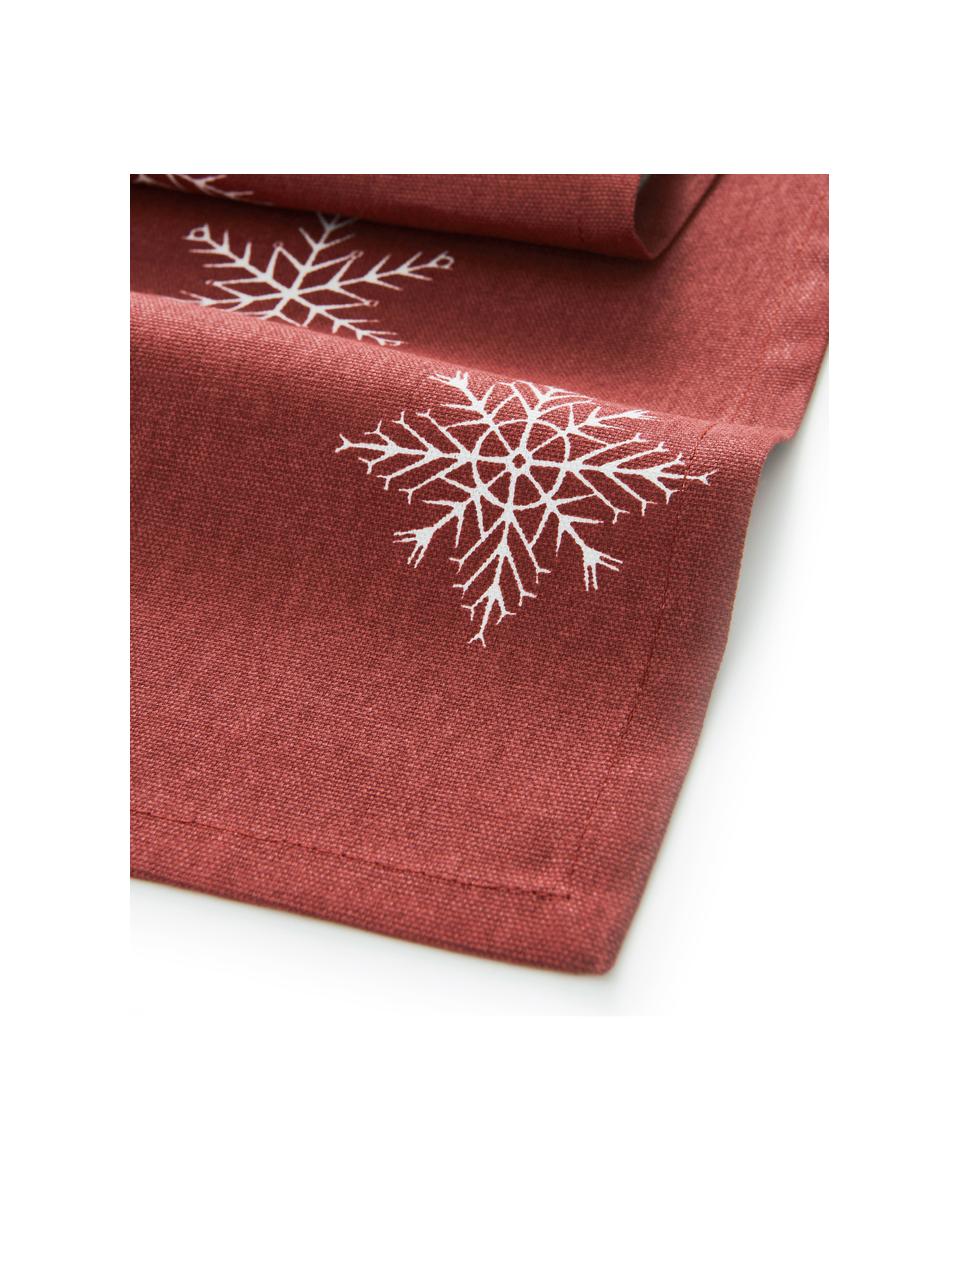 Runner da tavola con motivo a stelle Snow, 100% cotone, da coltivazione sostenibile del cotone, Rosso, bianco, Larg. 40 x Lung. 140 cm